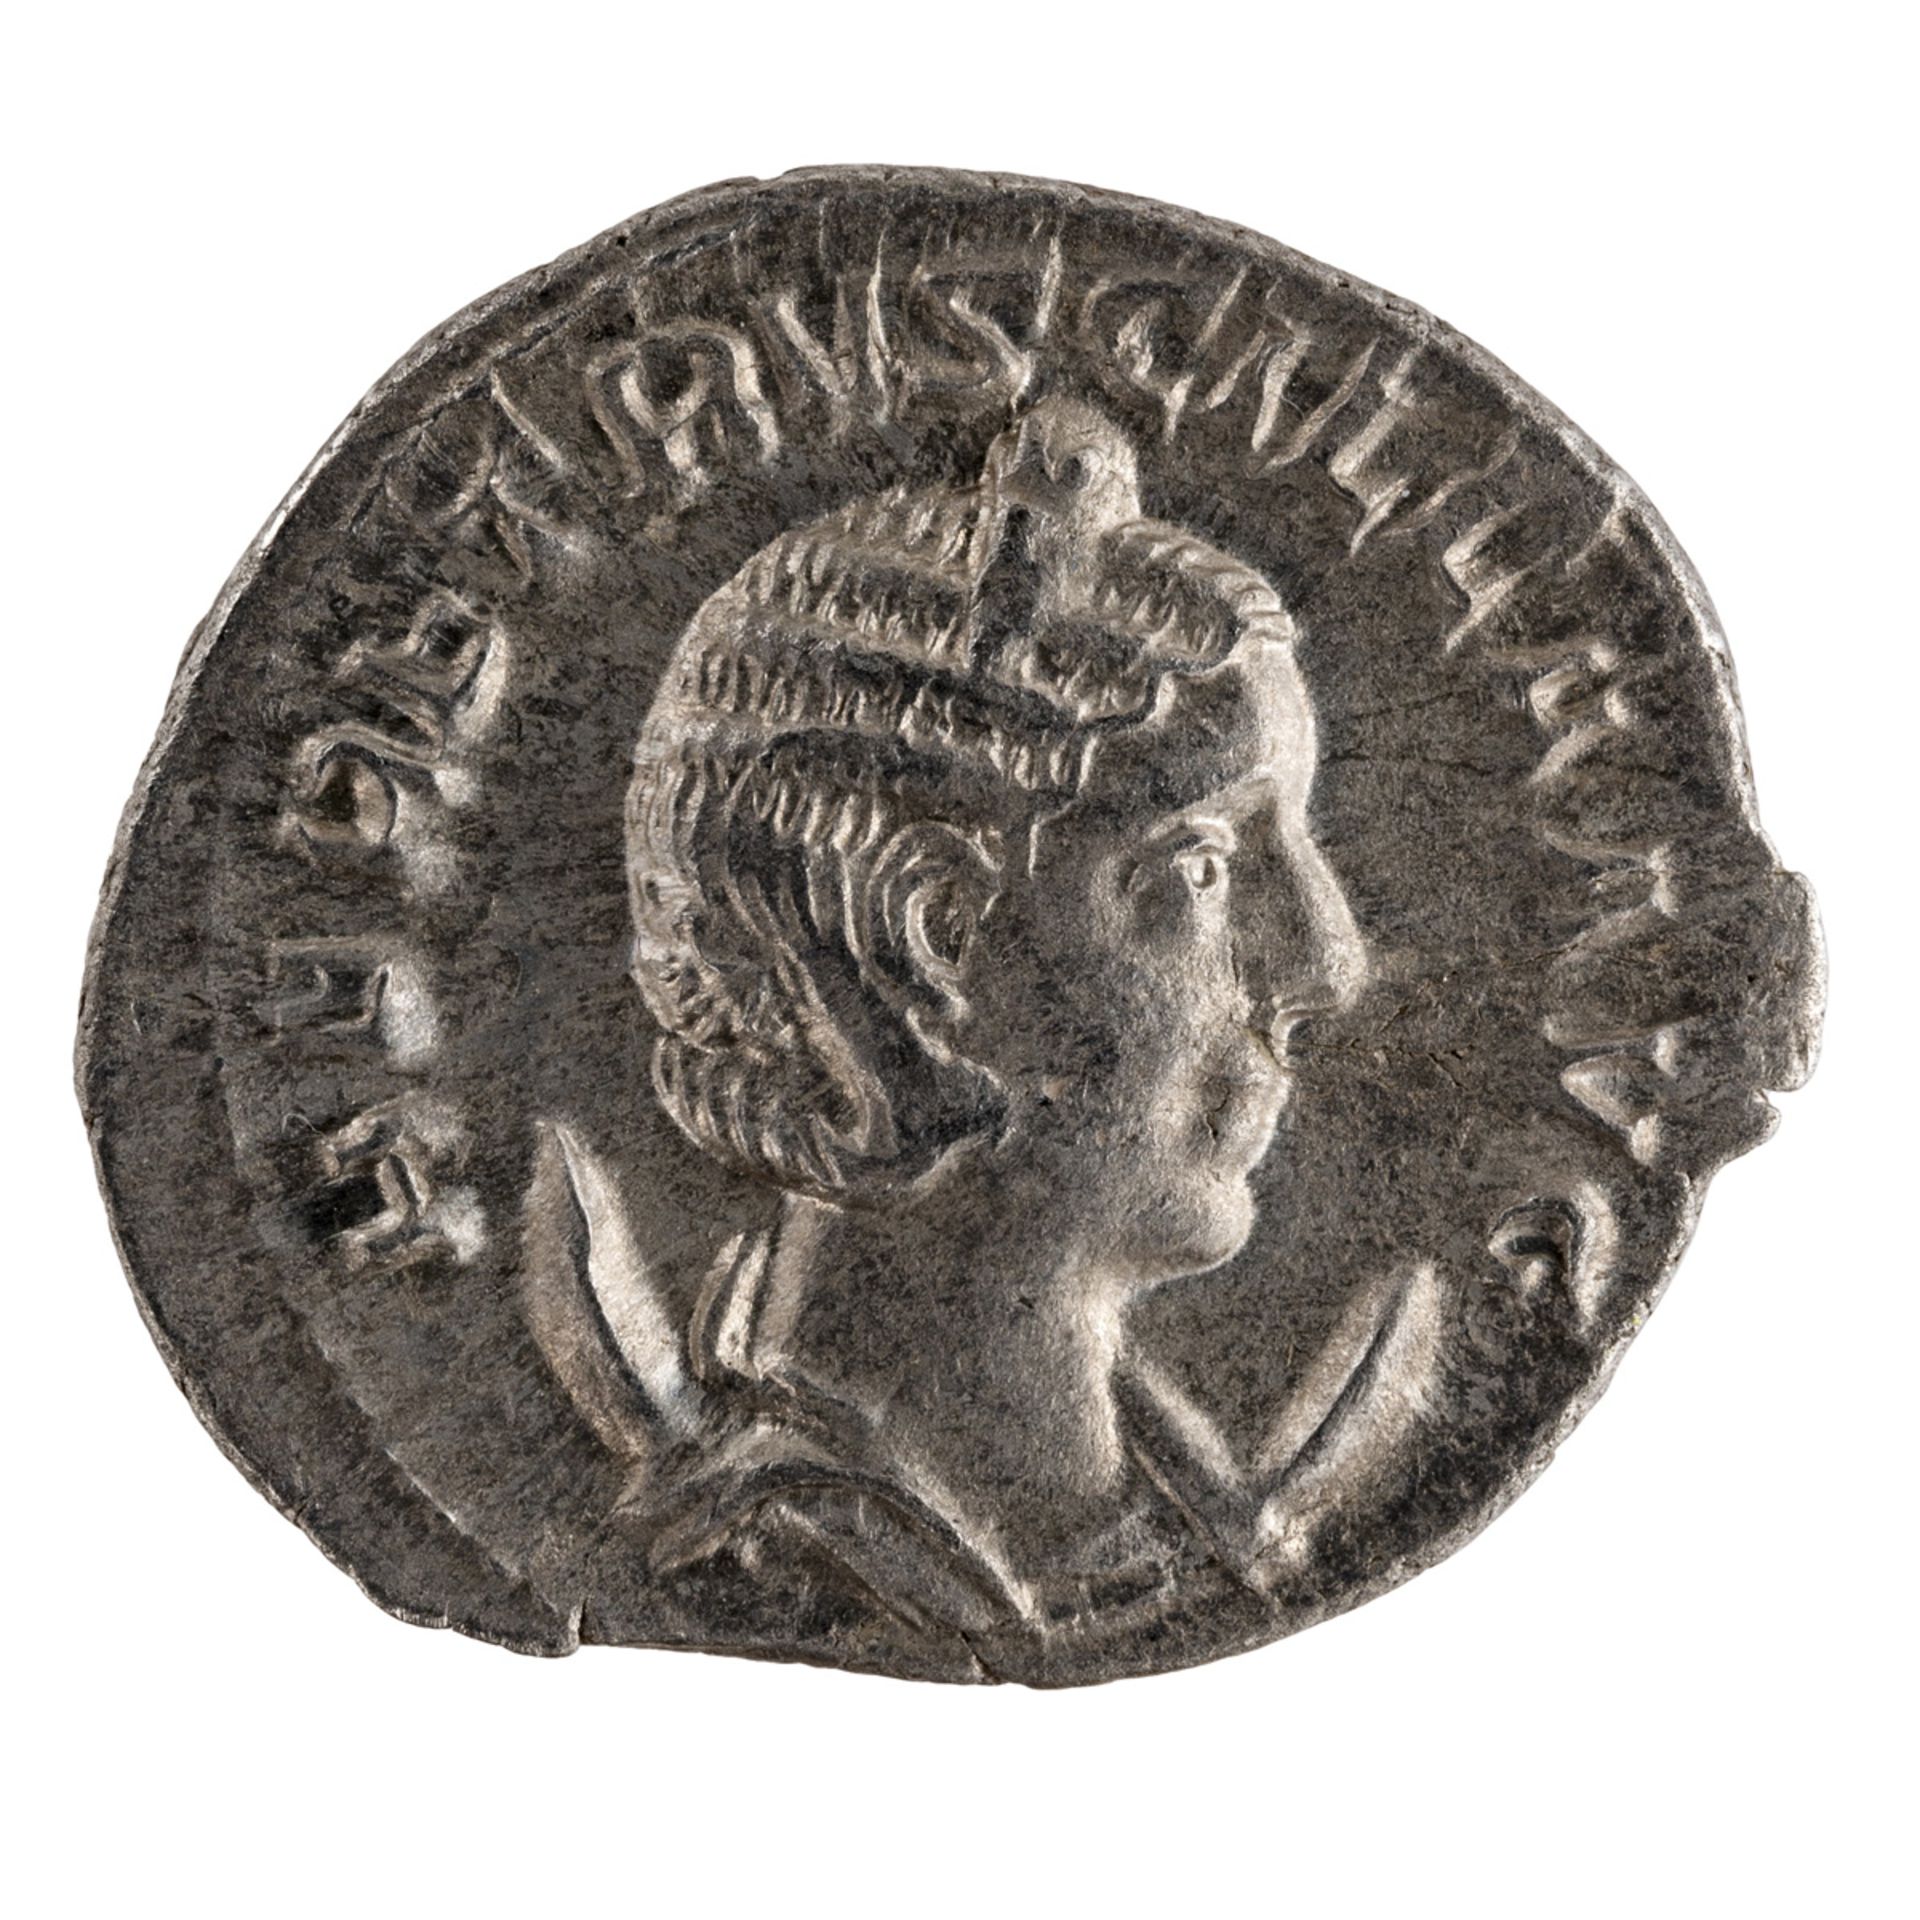 COIN ROMAN EMPIRE IMPERO ROMANO Herennia Etruscilla, wife of Decius Antoninianus. 250-251 AD. HER